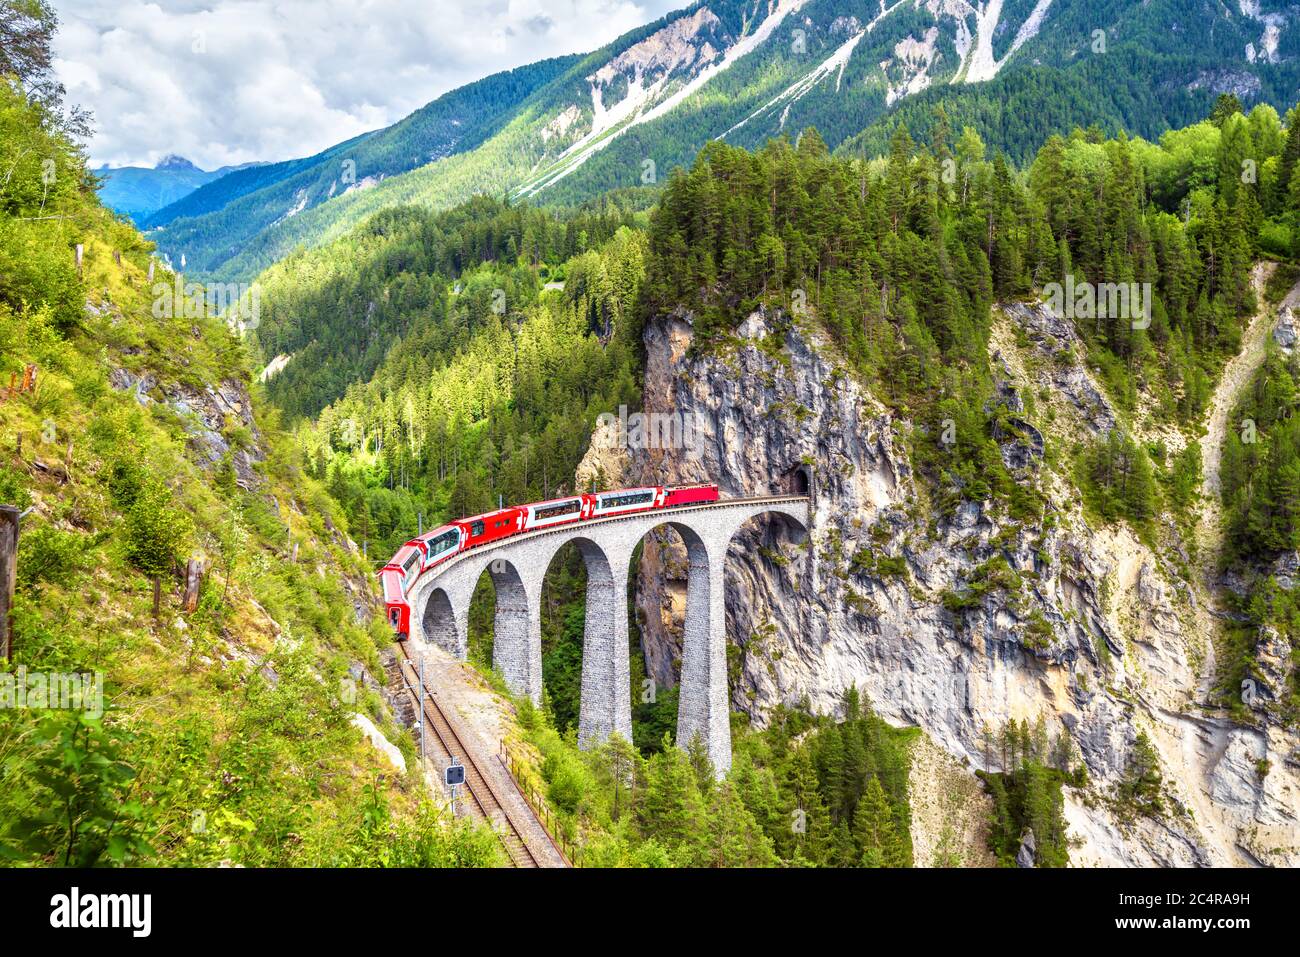 Landwasser Viadukt im Sommer, Filisur, Schweiz. Es ist Wahrzeichen der Schweizer Alpen. Schöne alpine Landschaft. Roter Zug von Bernina Express auf der Brid Stockfoto